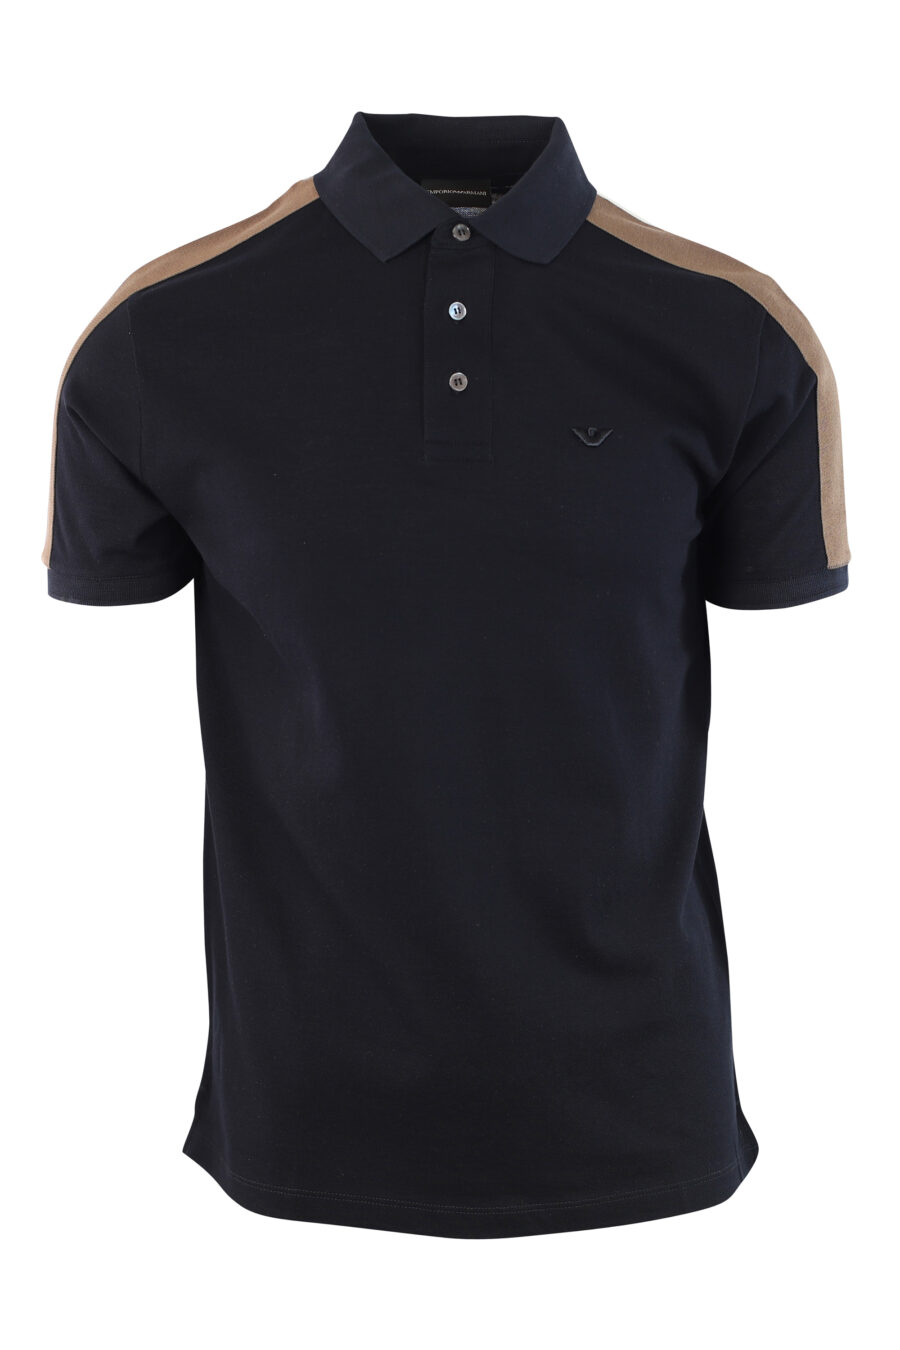 Dunkelblaues Poloshirt mit brauner Schulterlinie - IMG 3795